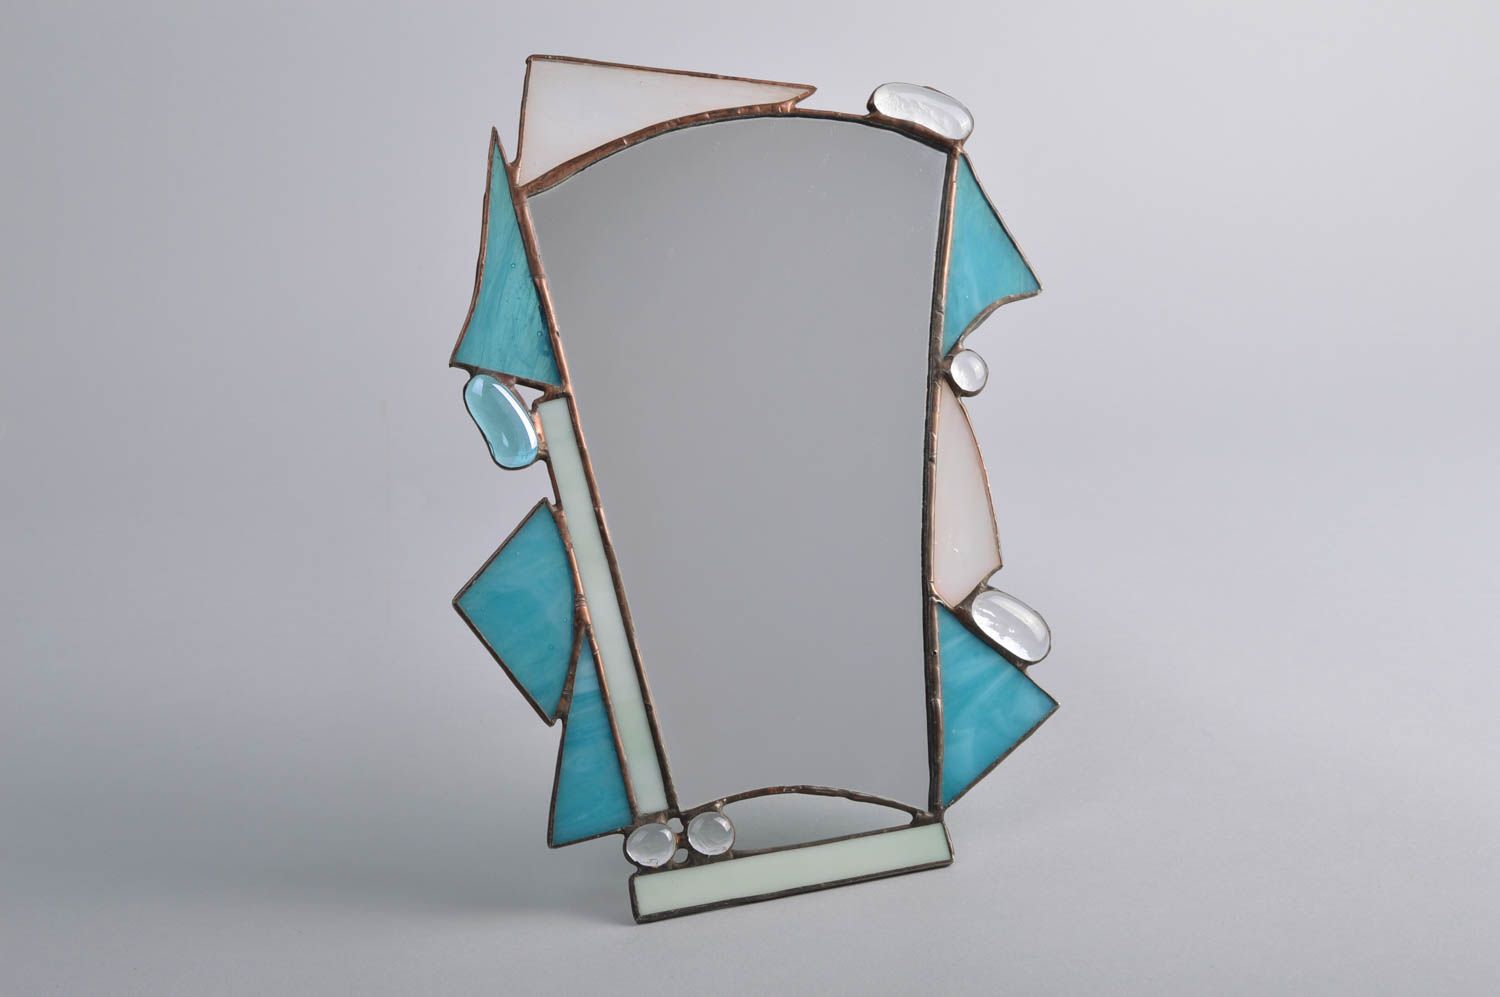 Настольное витражное зеркало красивое небольшое необычной формы ручная работа фото 2